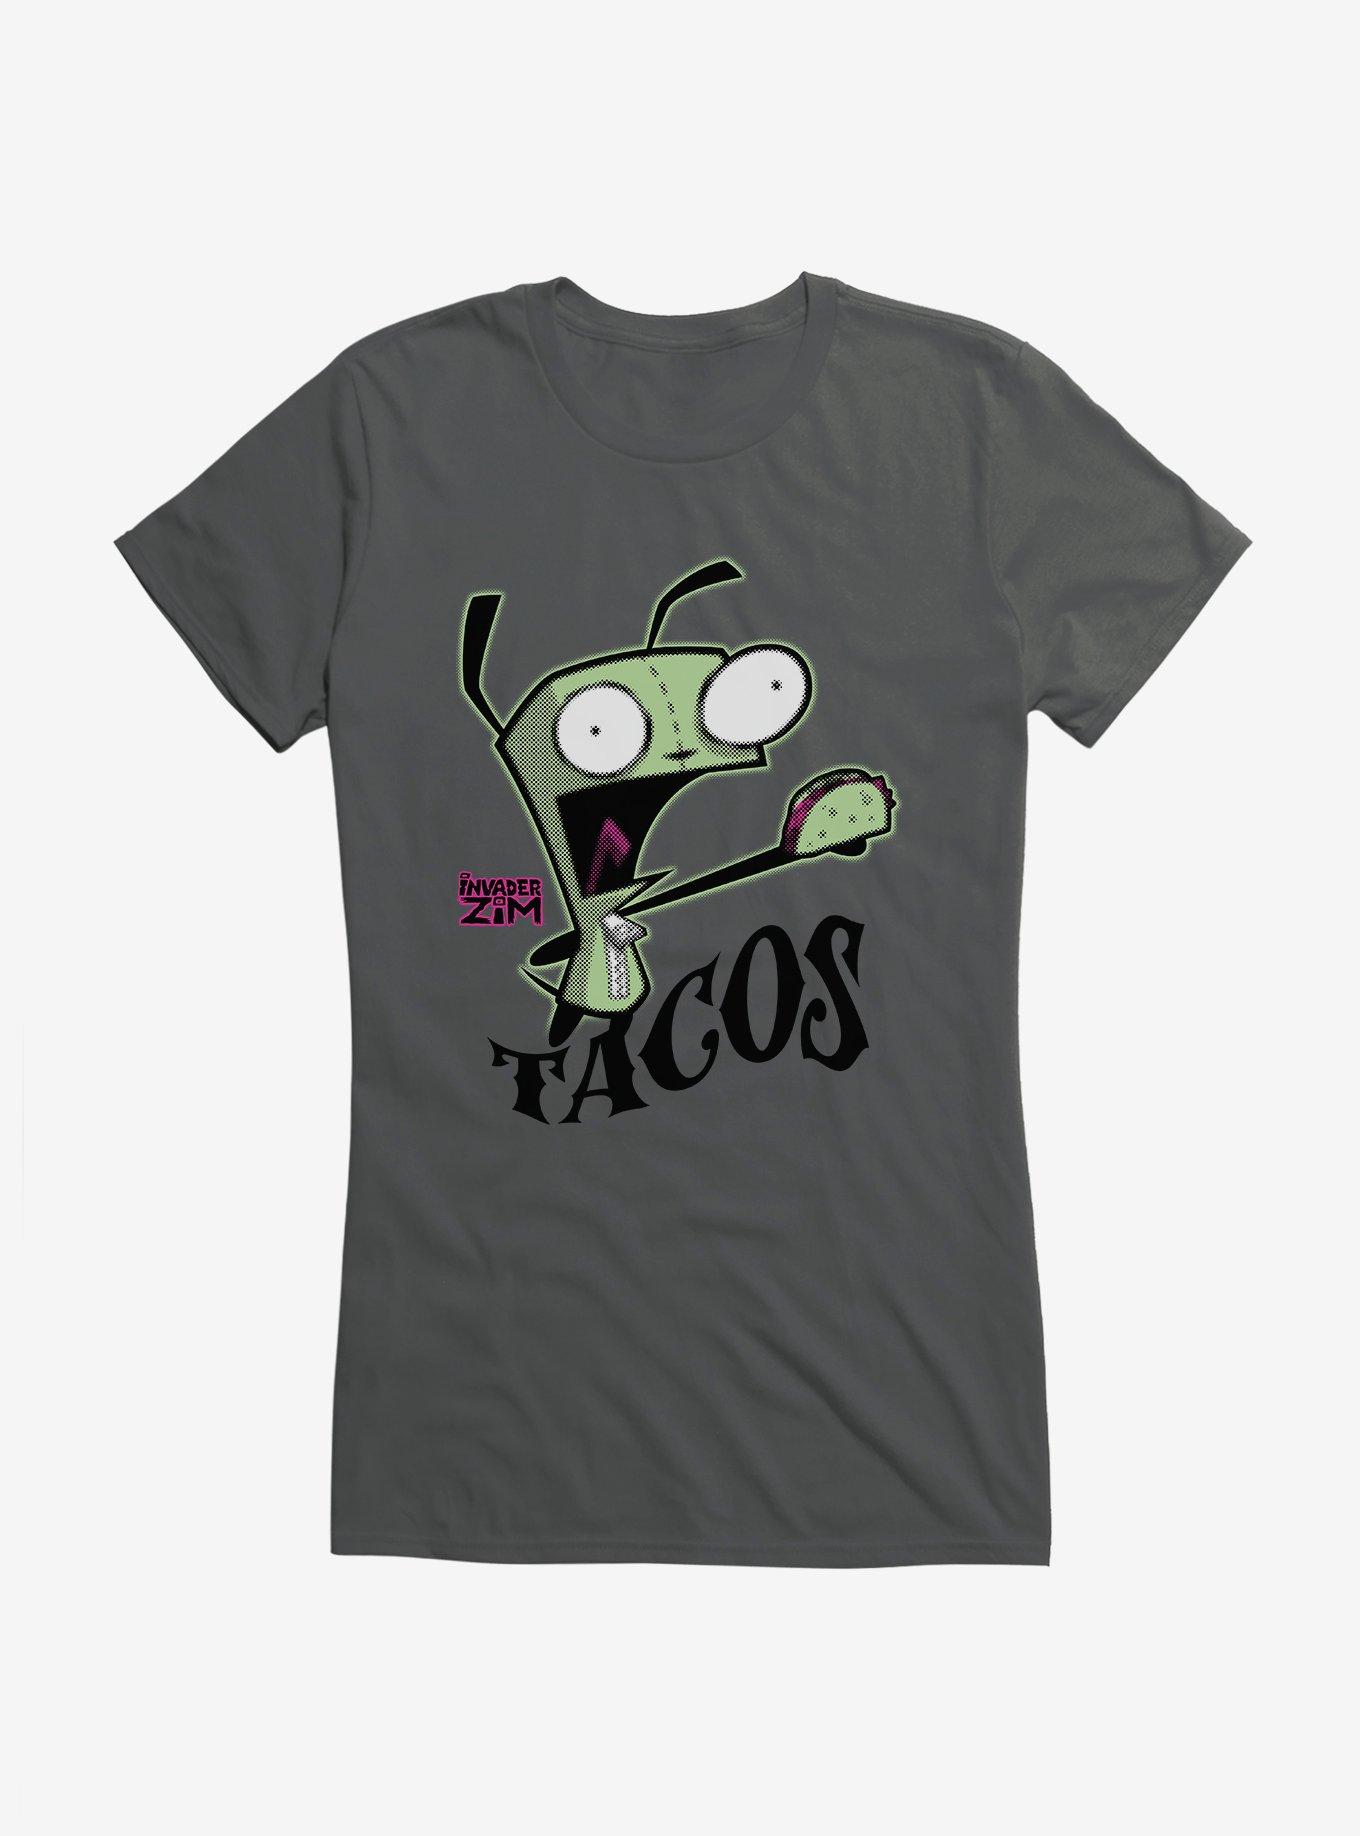 Invader Zim Gir Tacos Girls T-Shirt